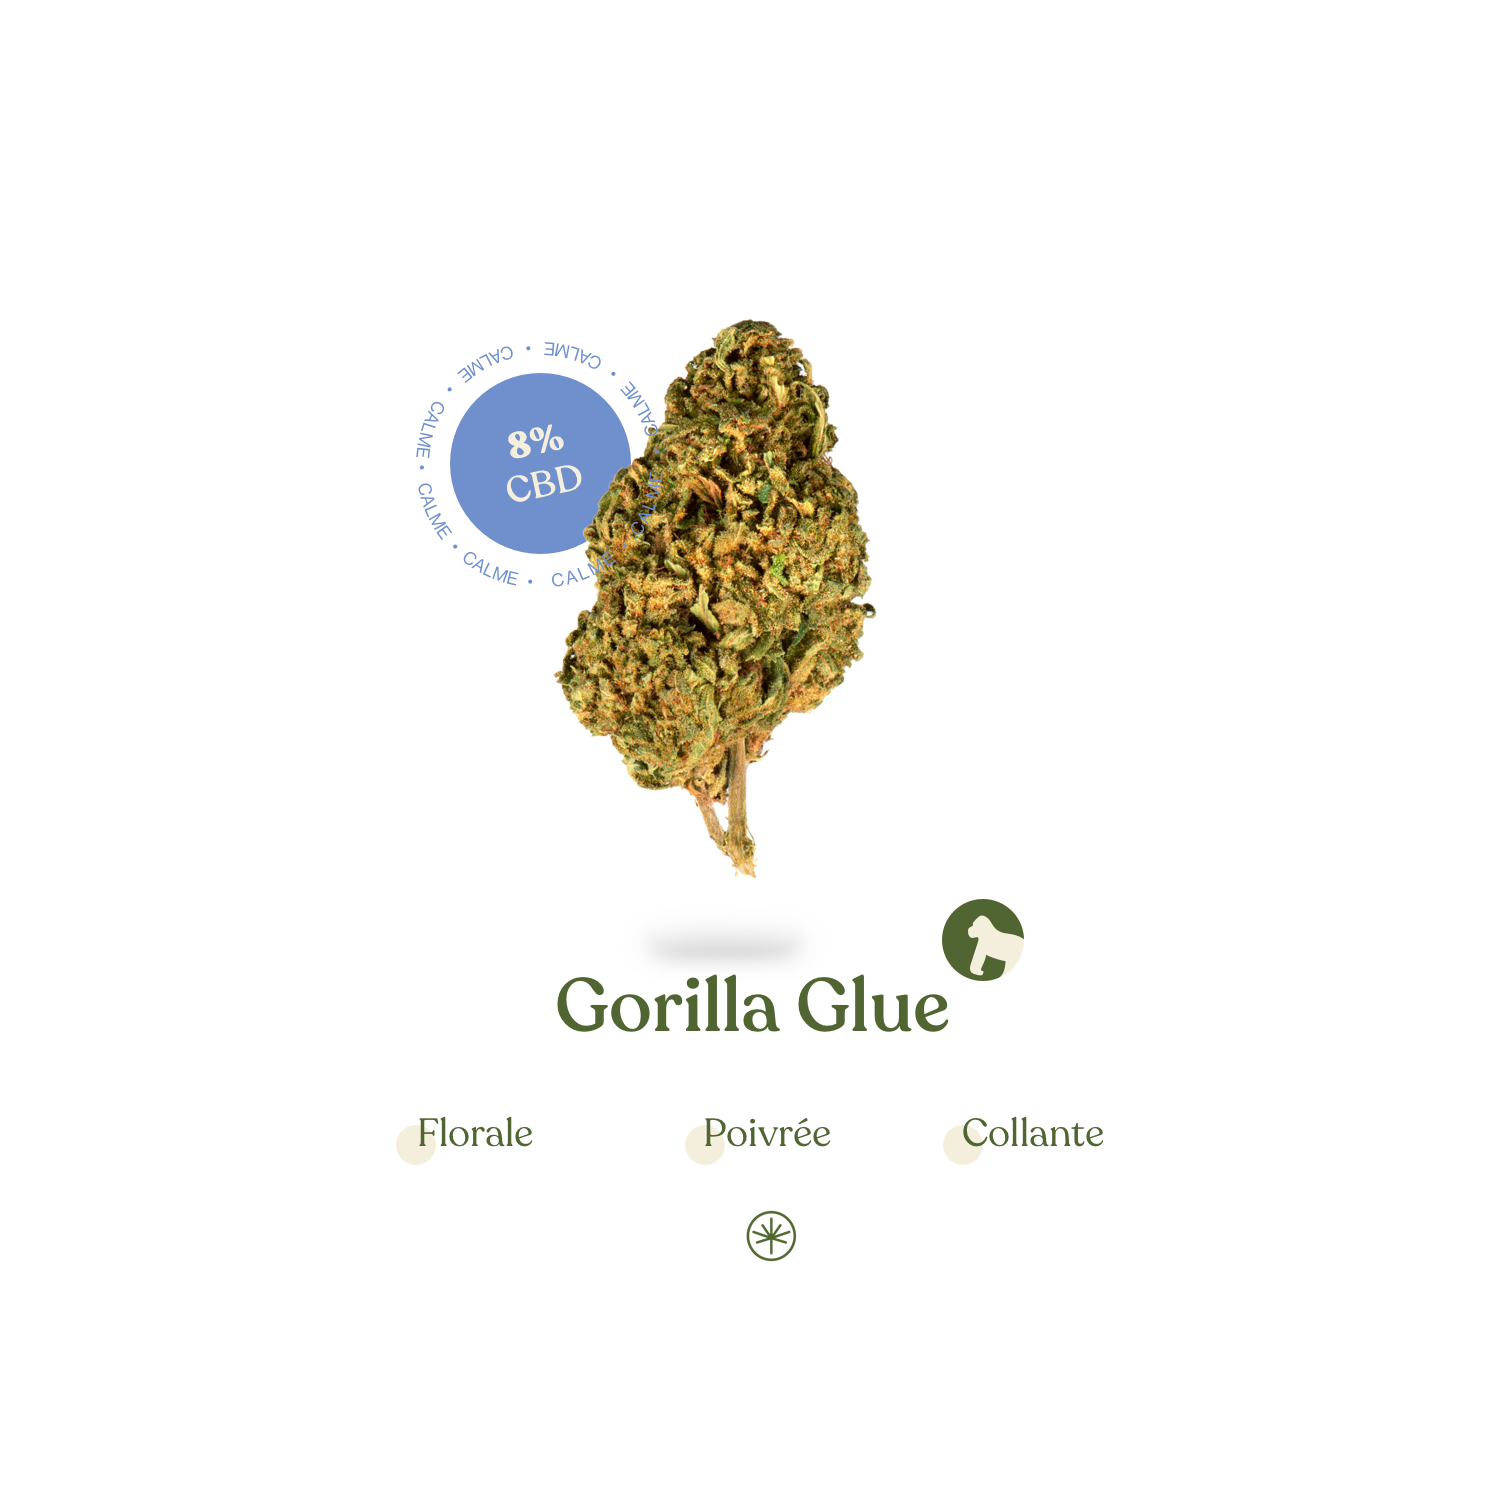 Gorilla glue CBD